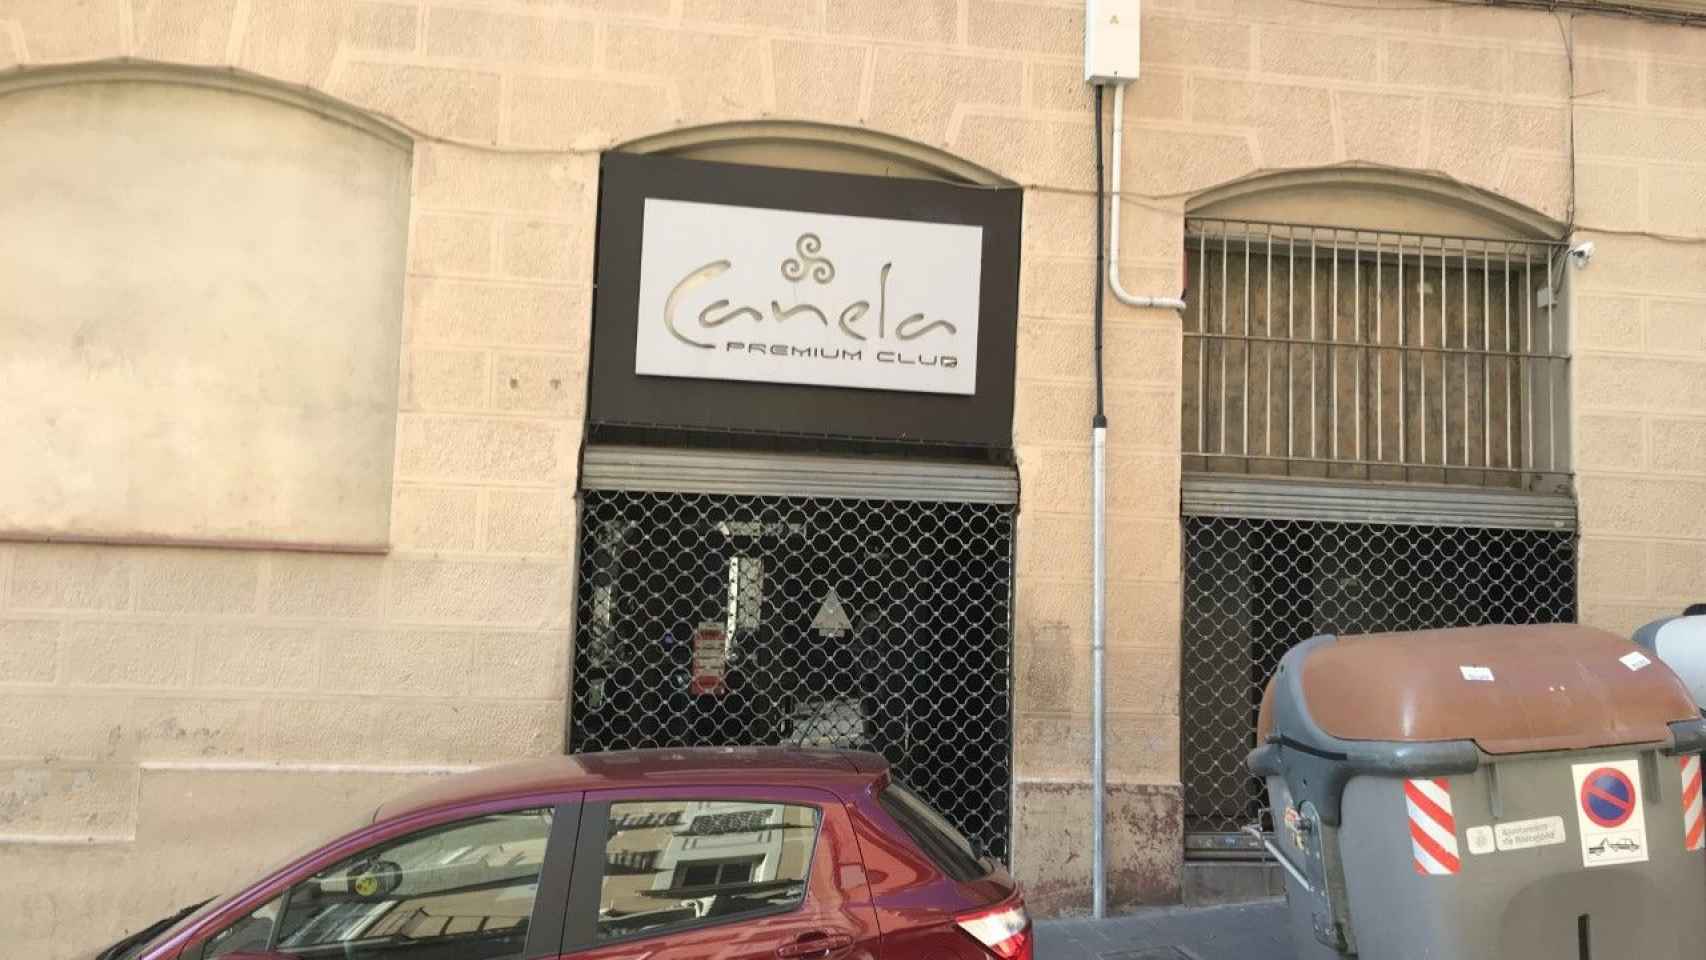 El Canela Premium Club está situado en pleno barrio de Gràcia / D.F.